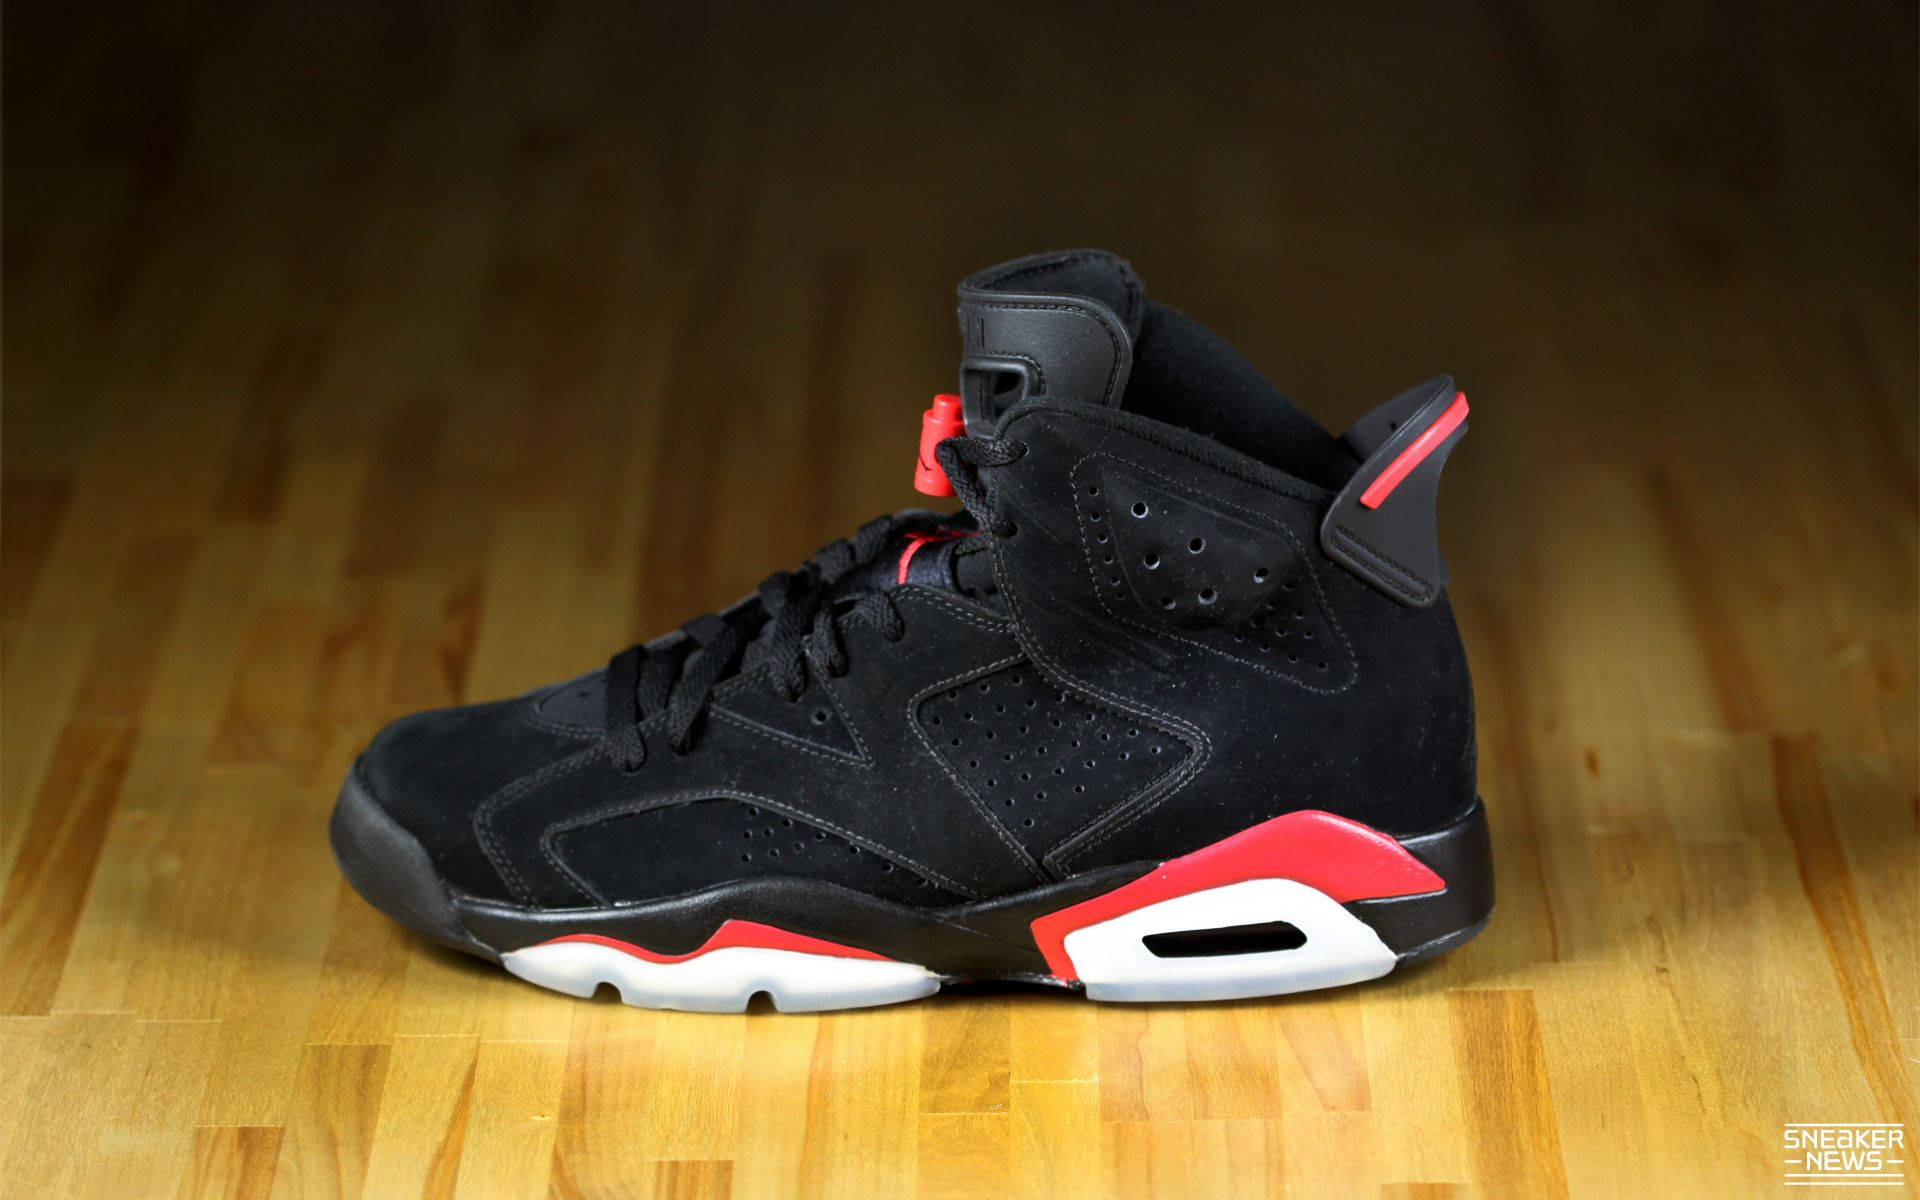 Sneaker Jordan 6 Black And Red